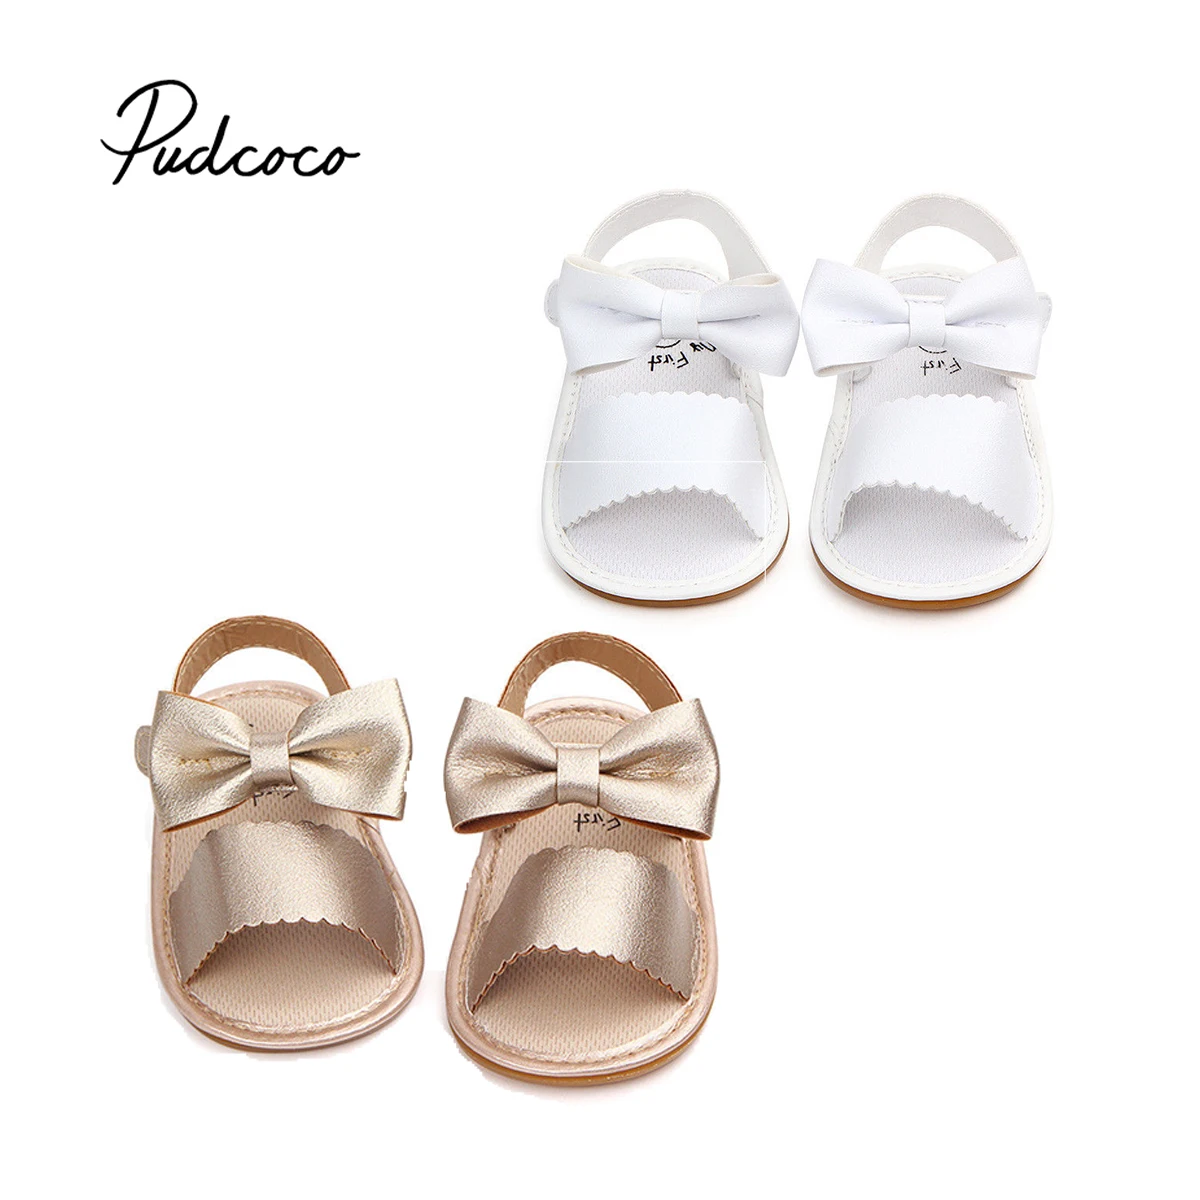 Pudcoco новорожденных сандалии для девочек мягкая подошва малышей Лето Hook& Loop обувь лук-узел сандалии